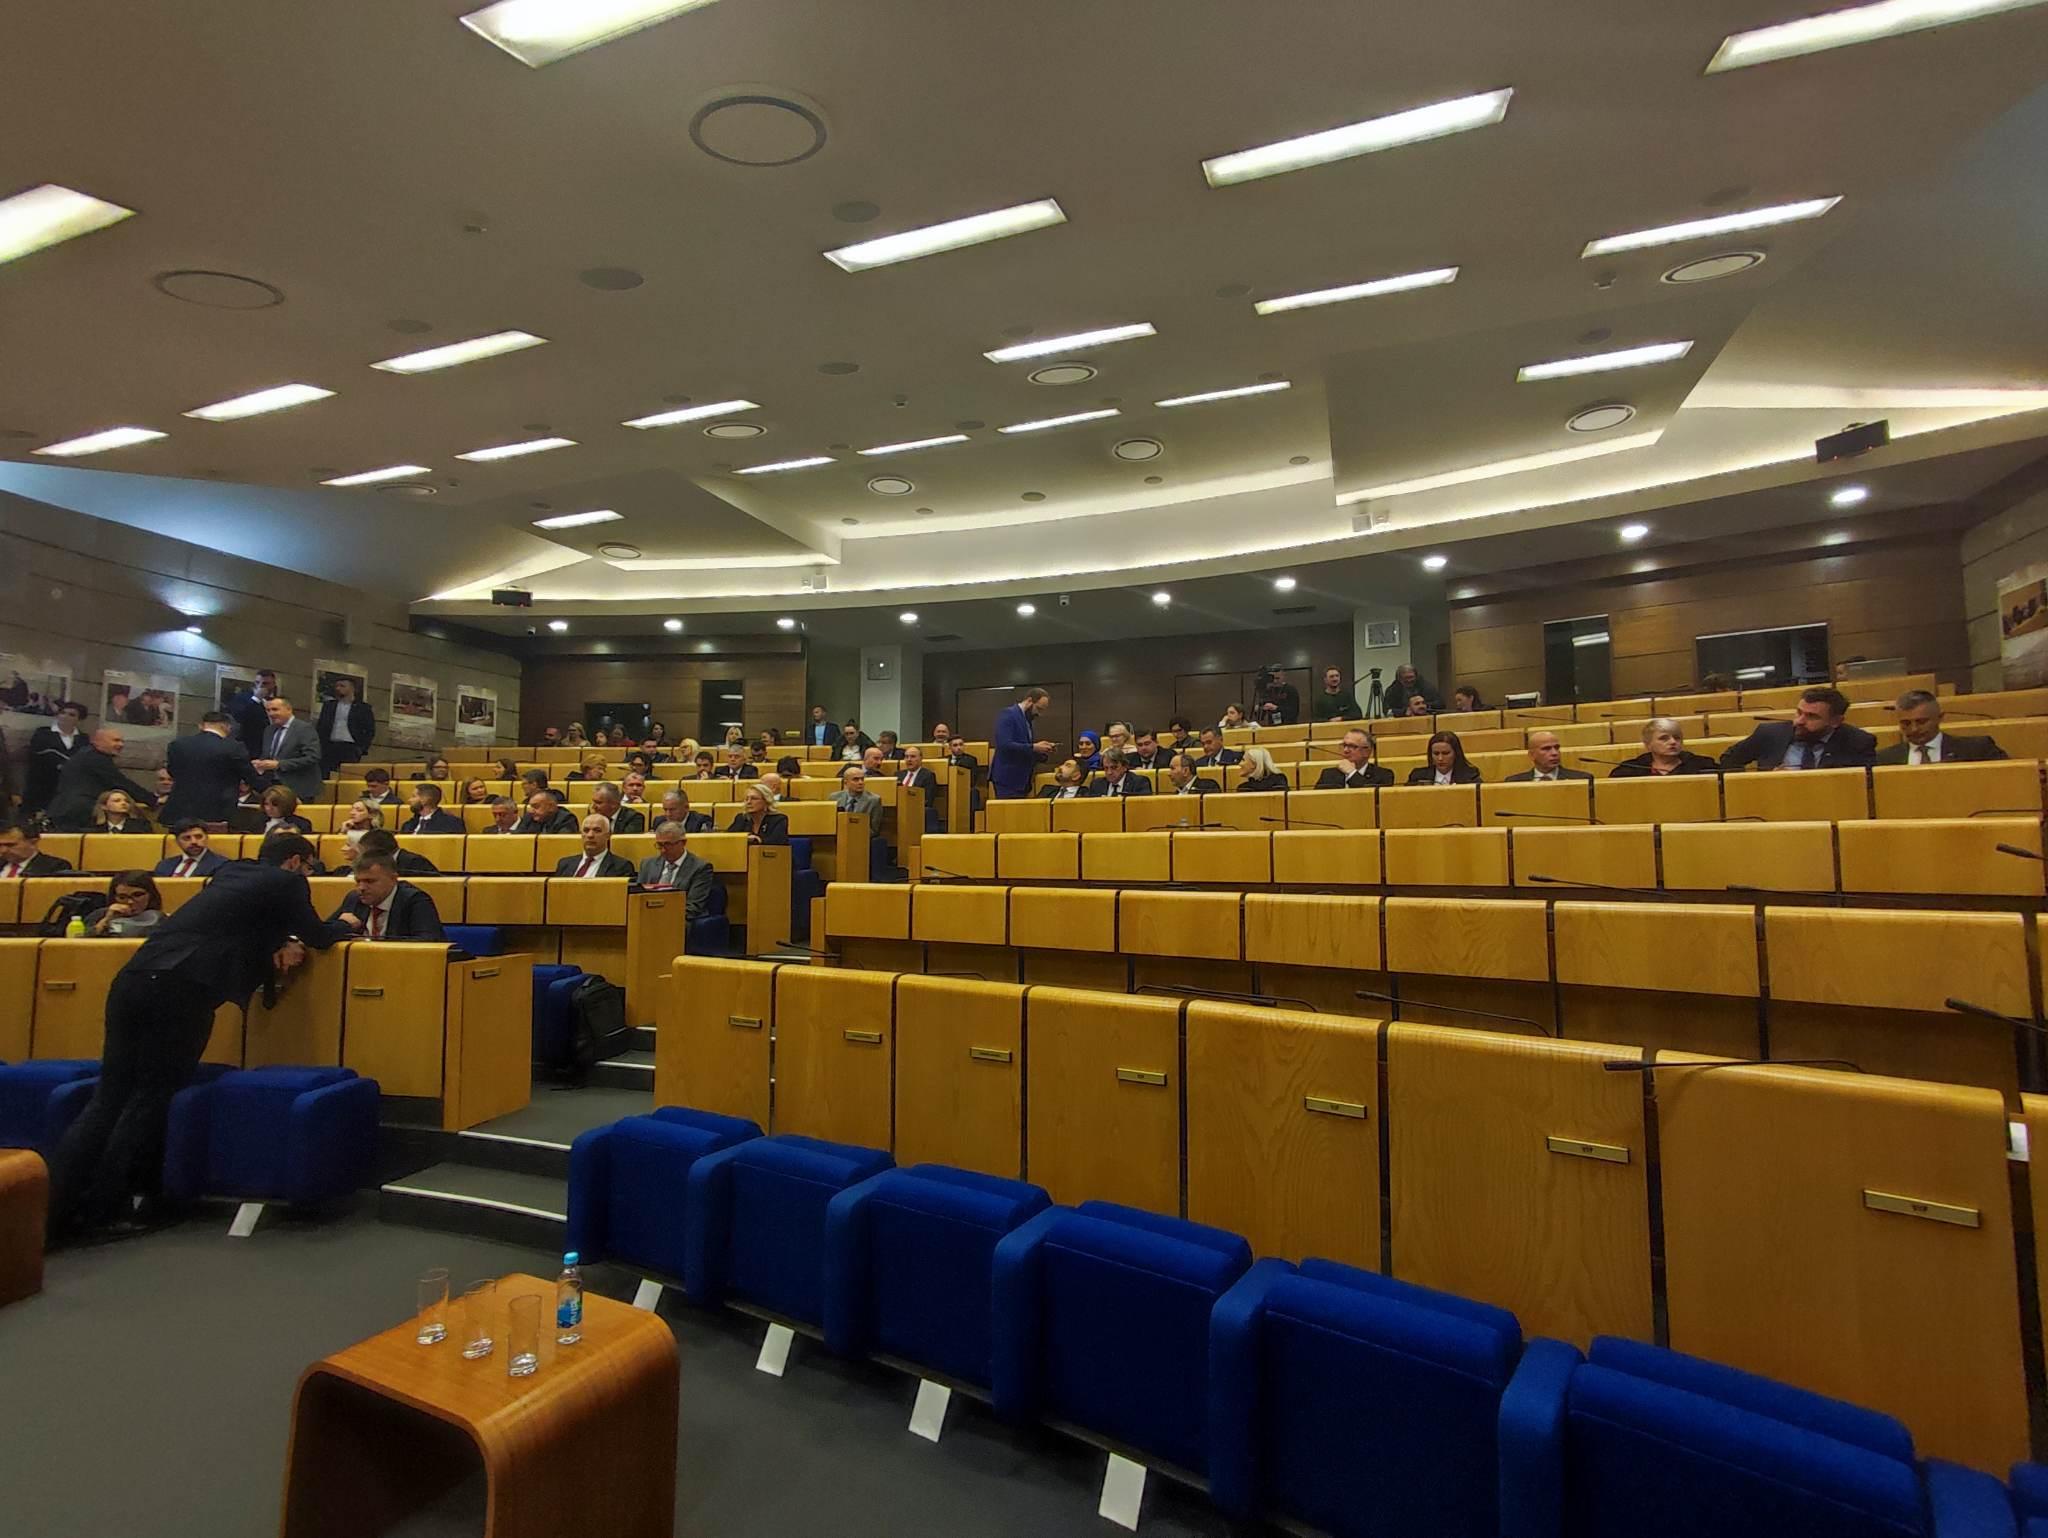 Nastavljena sjednica Predstavničkog doma Parlamenta FBiH: Zastupnika SDA nema u sali, njihov partner DF prisutan